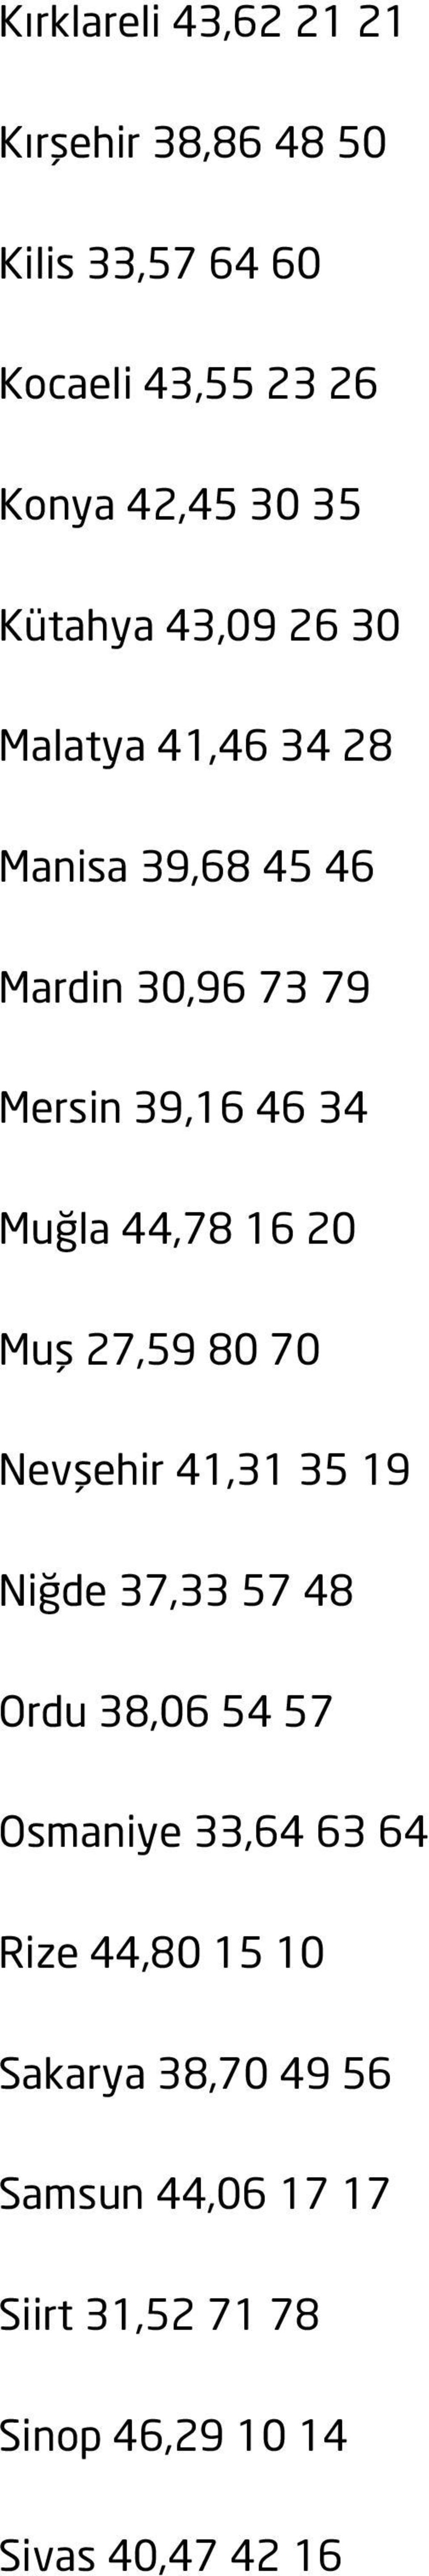 44,78 16 20 Muş 27,59 80 70 Nevşehir 41,31 35 19 Niğde 37,33 57 48 Ordu 38,06 54 57 Osmaniye 33,64 63 64